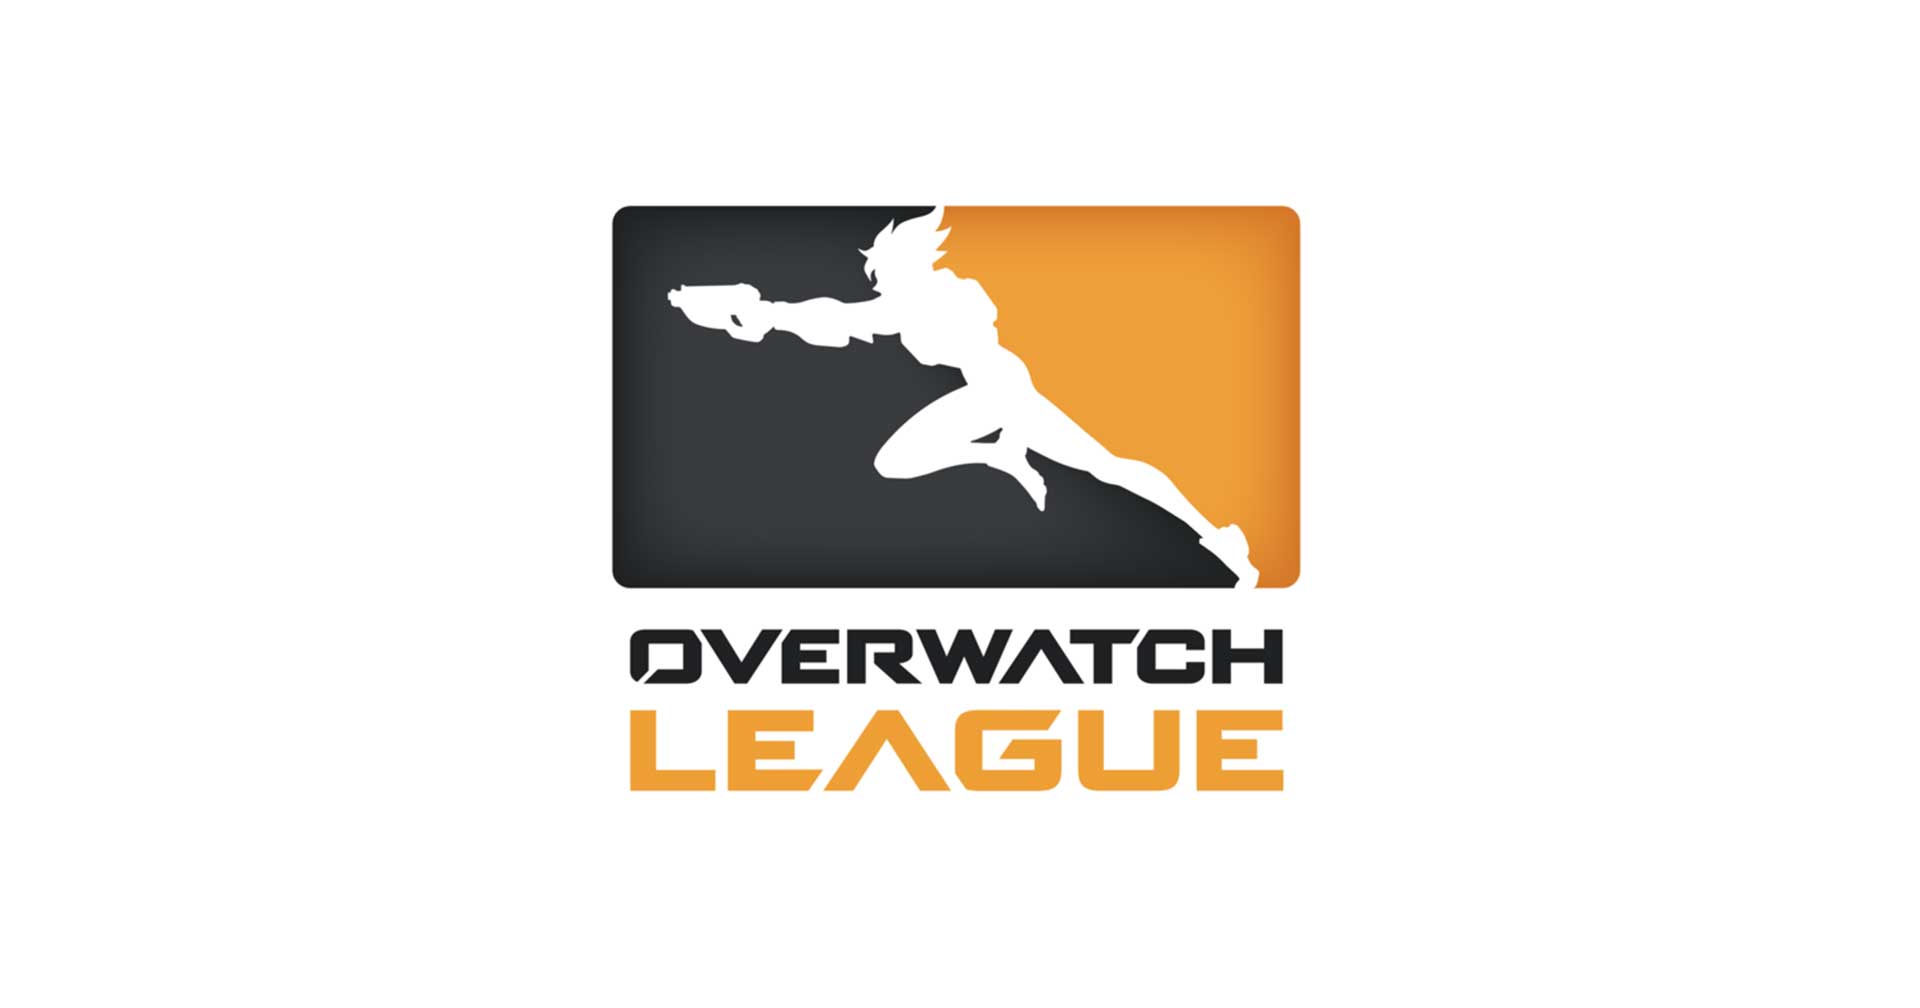 สถิติ Overwatch League 2022 เผย ในฮีโรทั้งหมด 35 ตัว เหล่านักแข่งใช้กันแค่ 5 ตัว